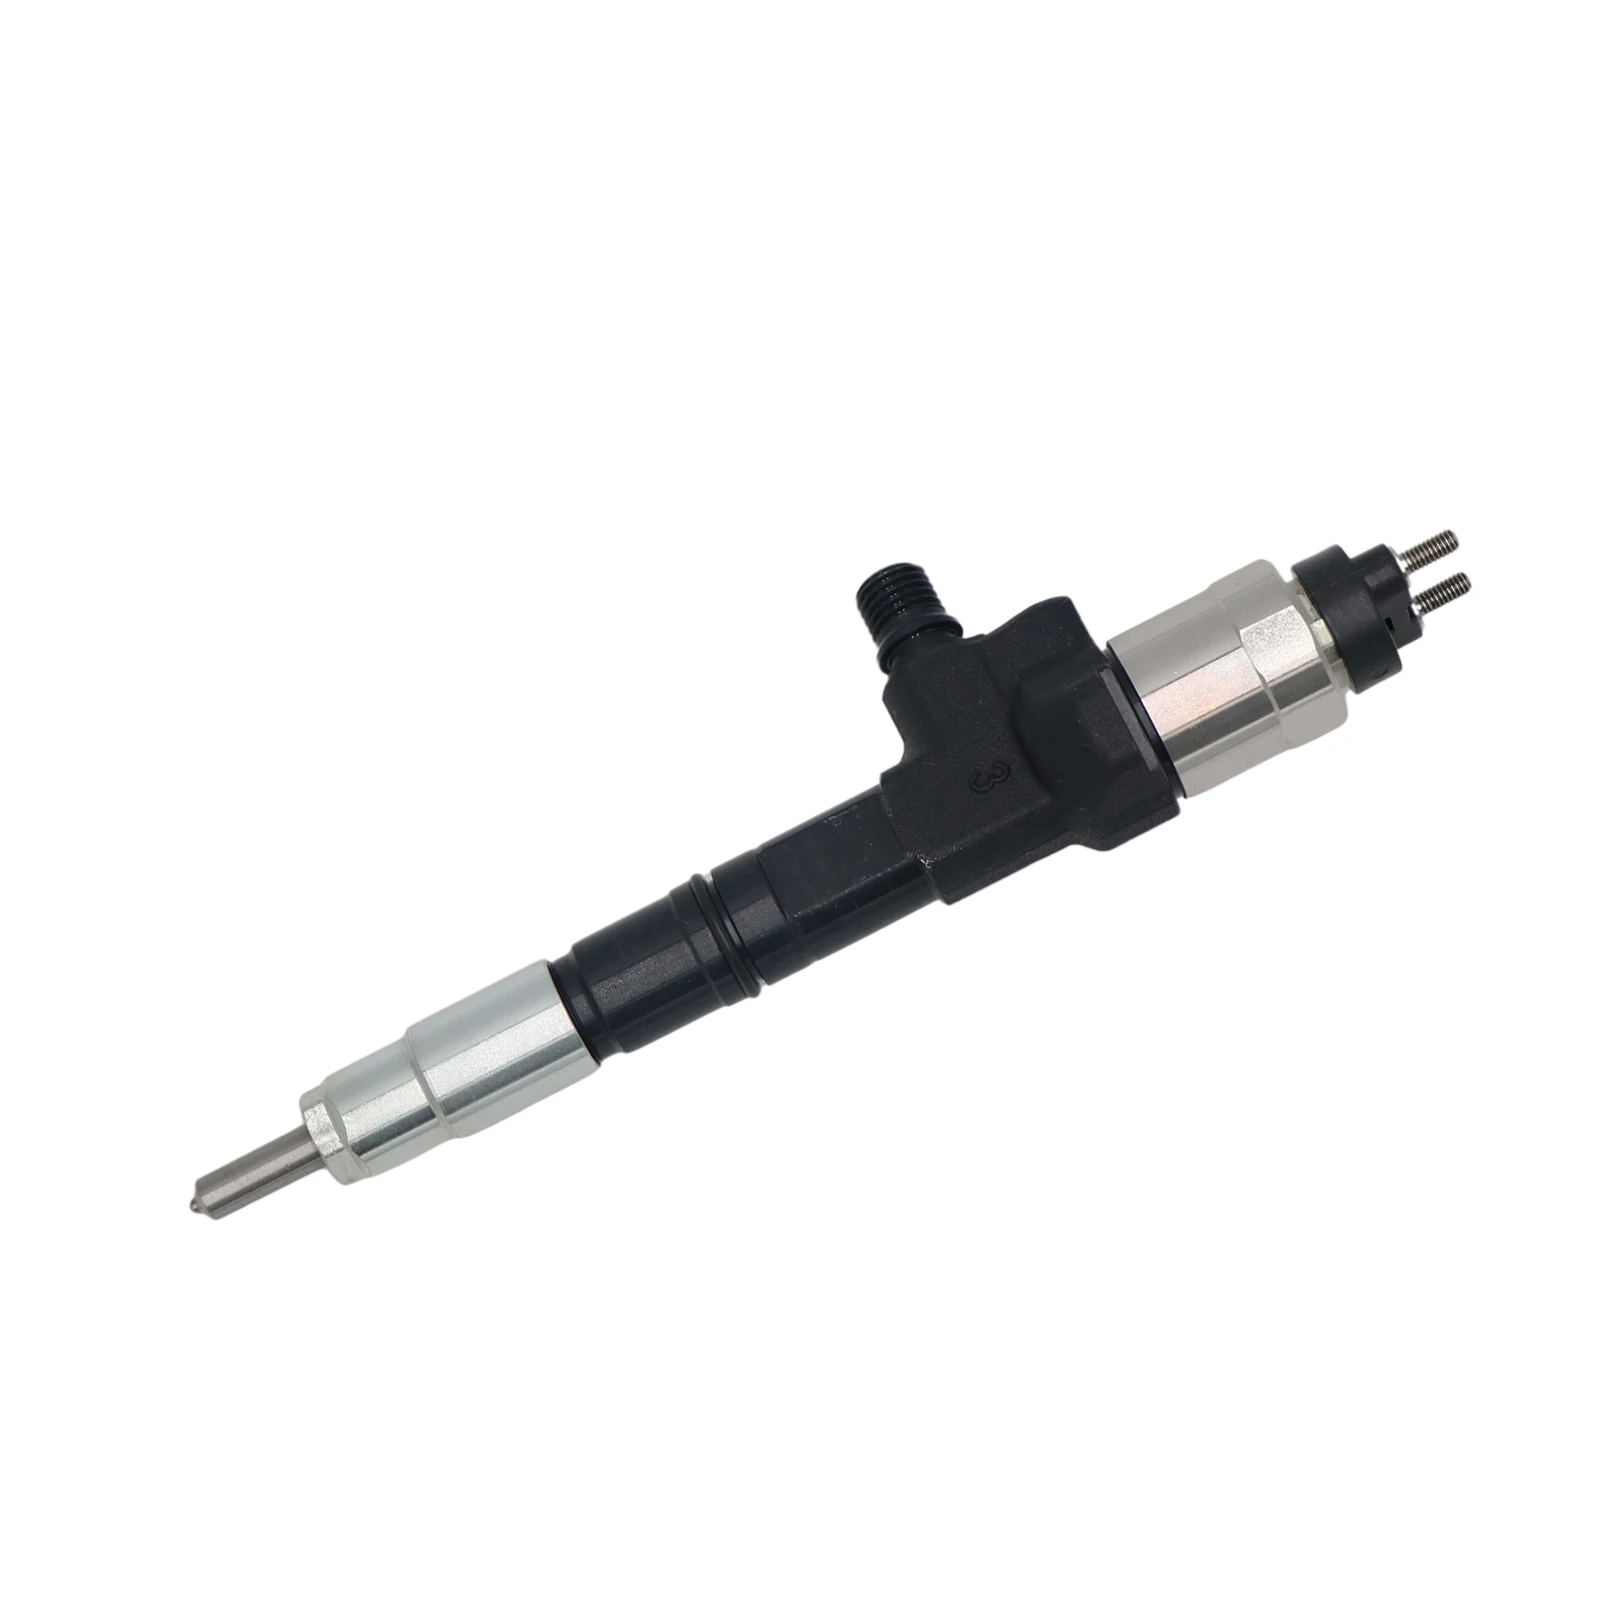 Fuel Injector Nozzle 095000-9690 Fuel Injector for Kubota Engine V3800 V3800T 1J500-53051 095000-9698 Derv Engine Accessories